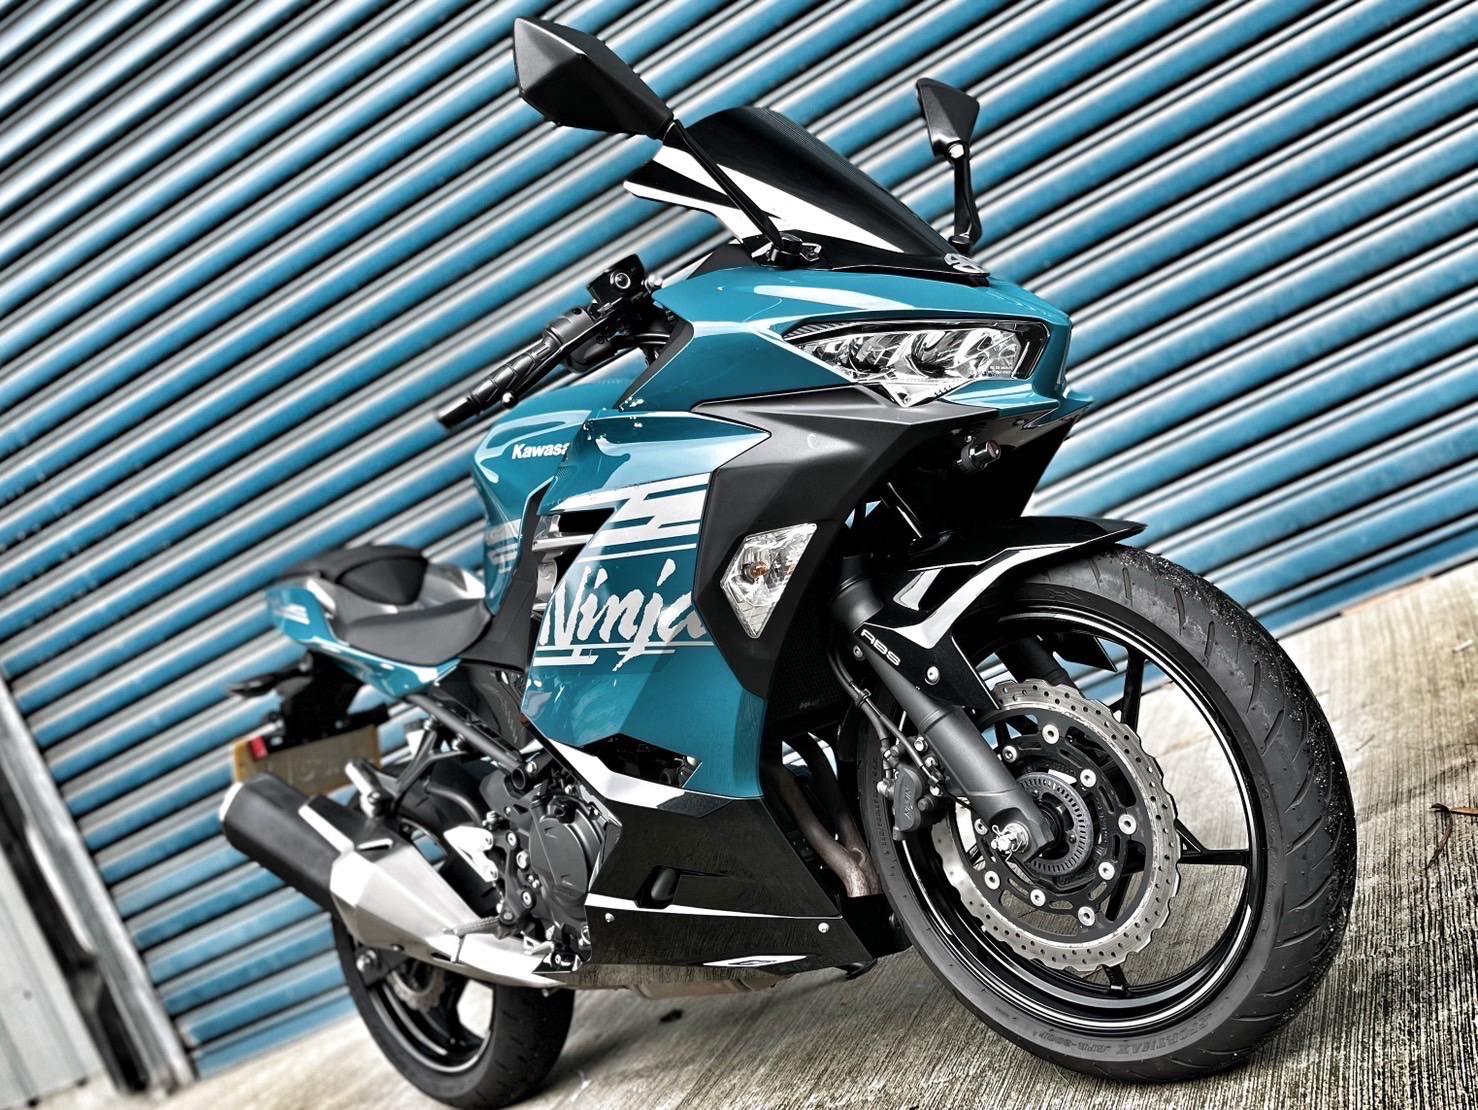 【小資族二手重機買賣】KAWASAKI NINJA400 - 「Webike-摩托車市」 無摔無事故 原廠保固 小資族二手重機買賣